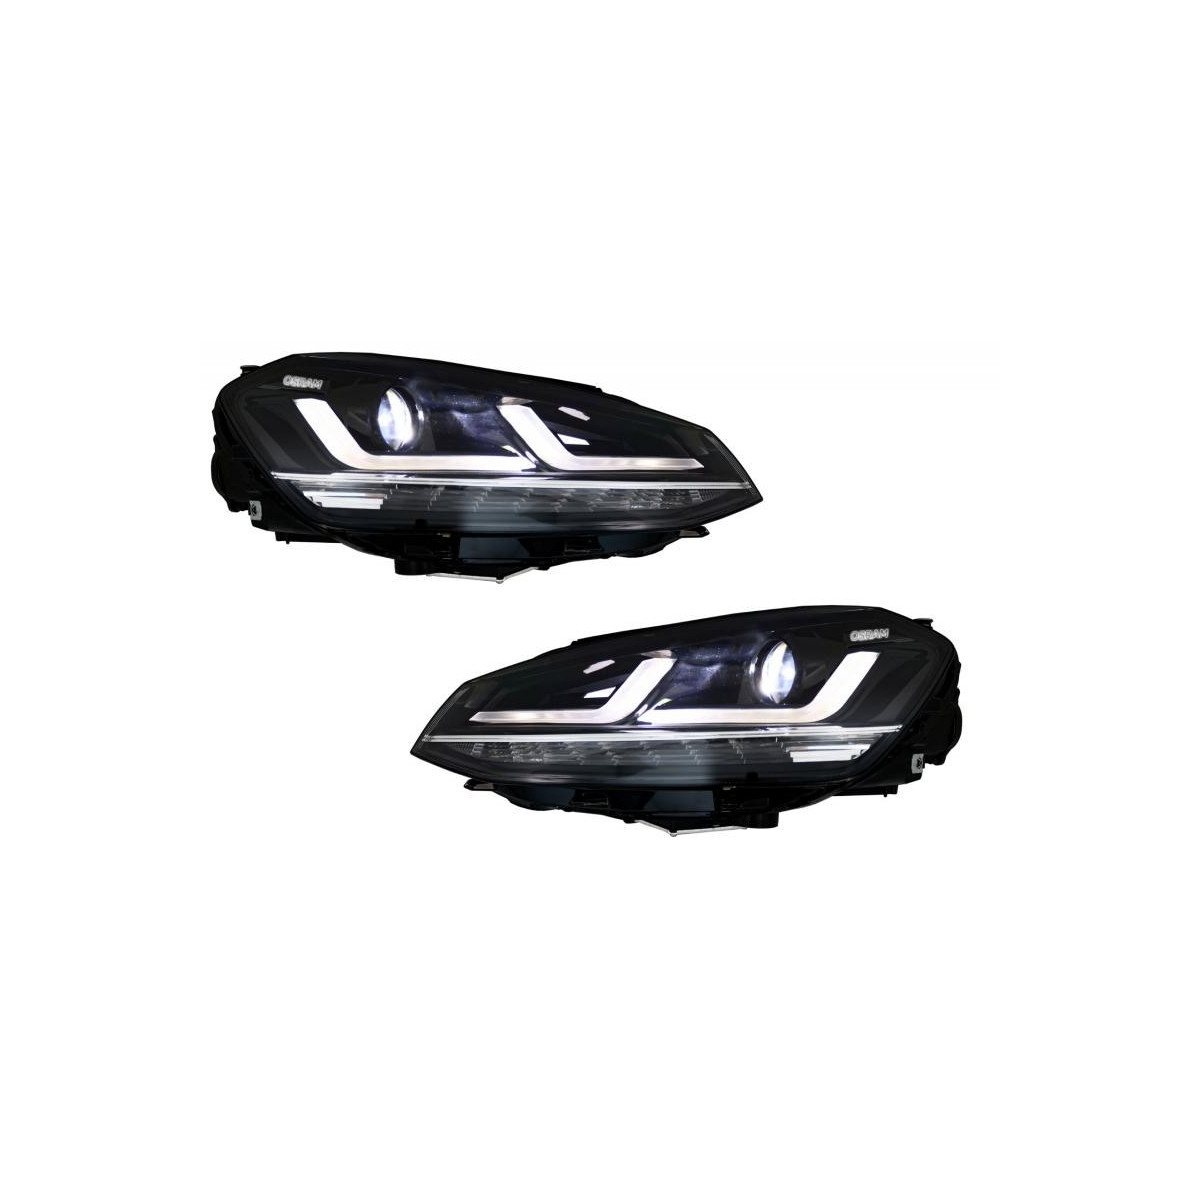 LAMPY PRZEDNIE VW GOLF 7 (12-17) OSRAM CHROME LED